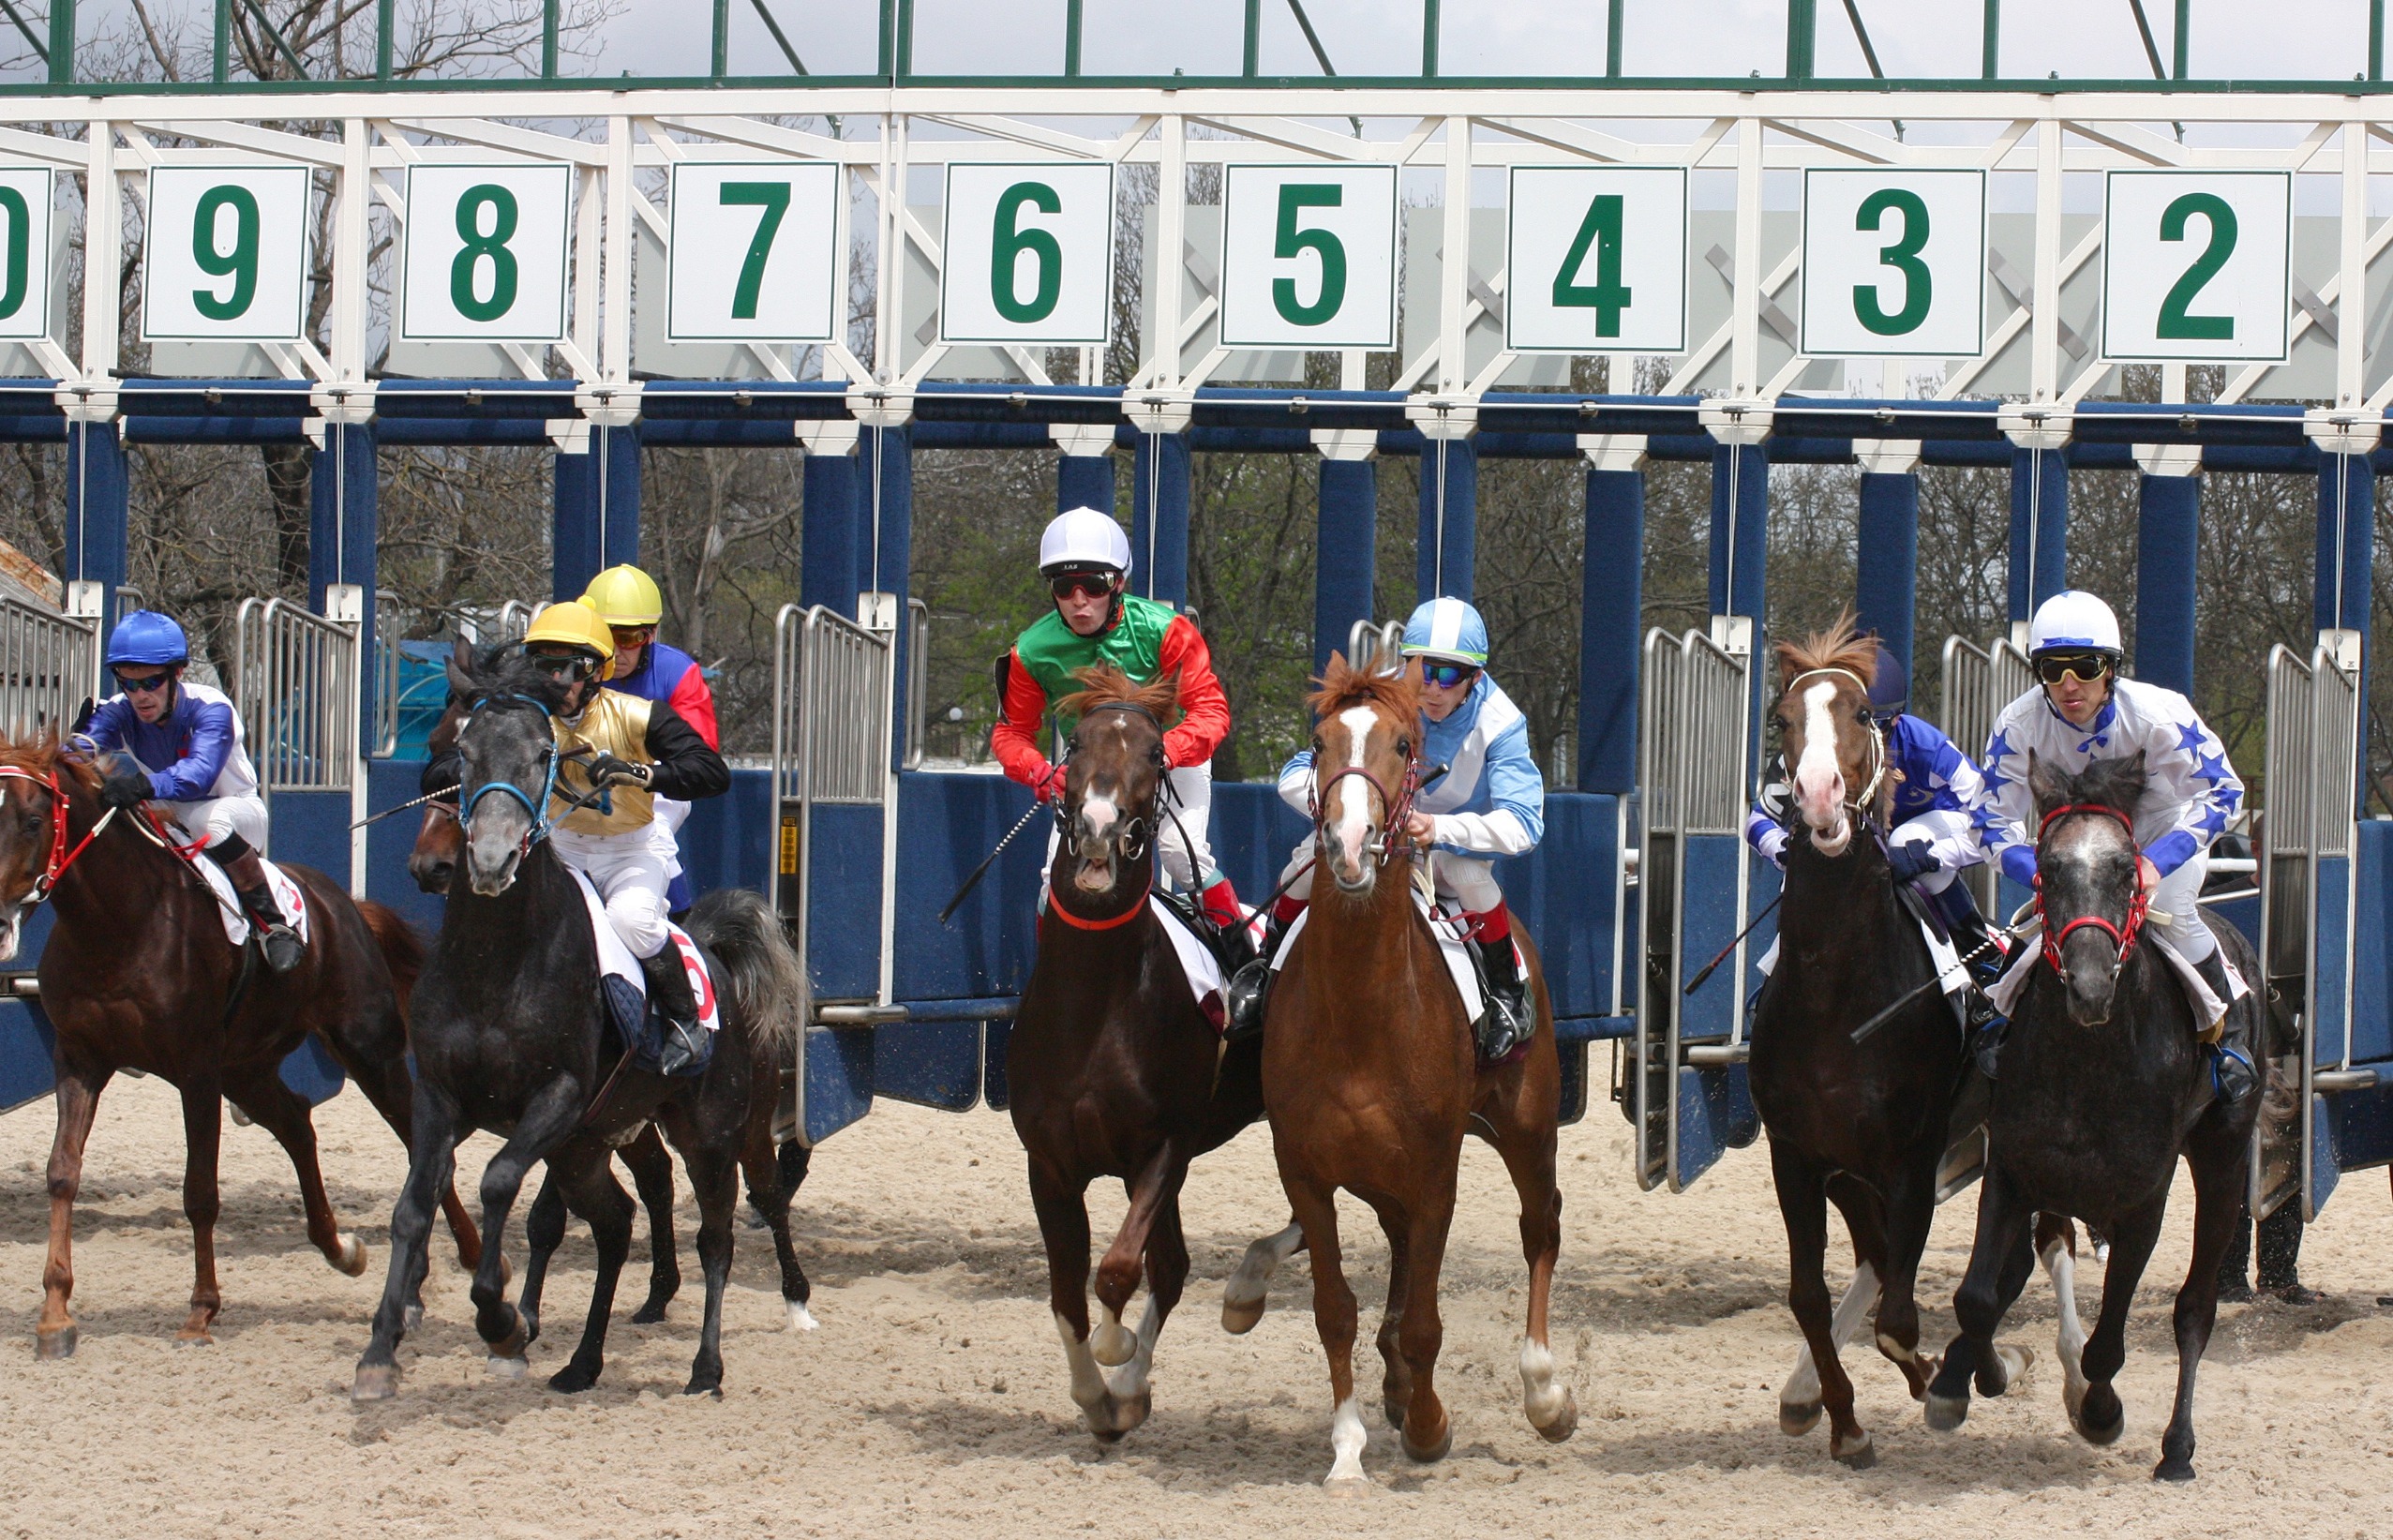 Lancement de la course de chevaux, avec les numeros de chaque chevaux au dessus des box